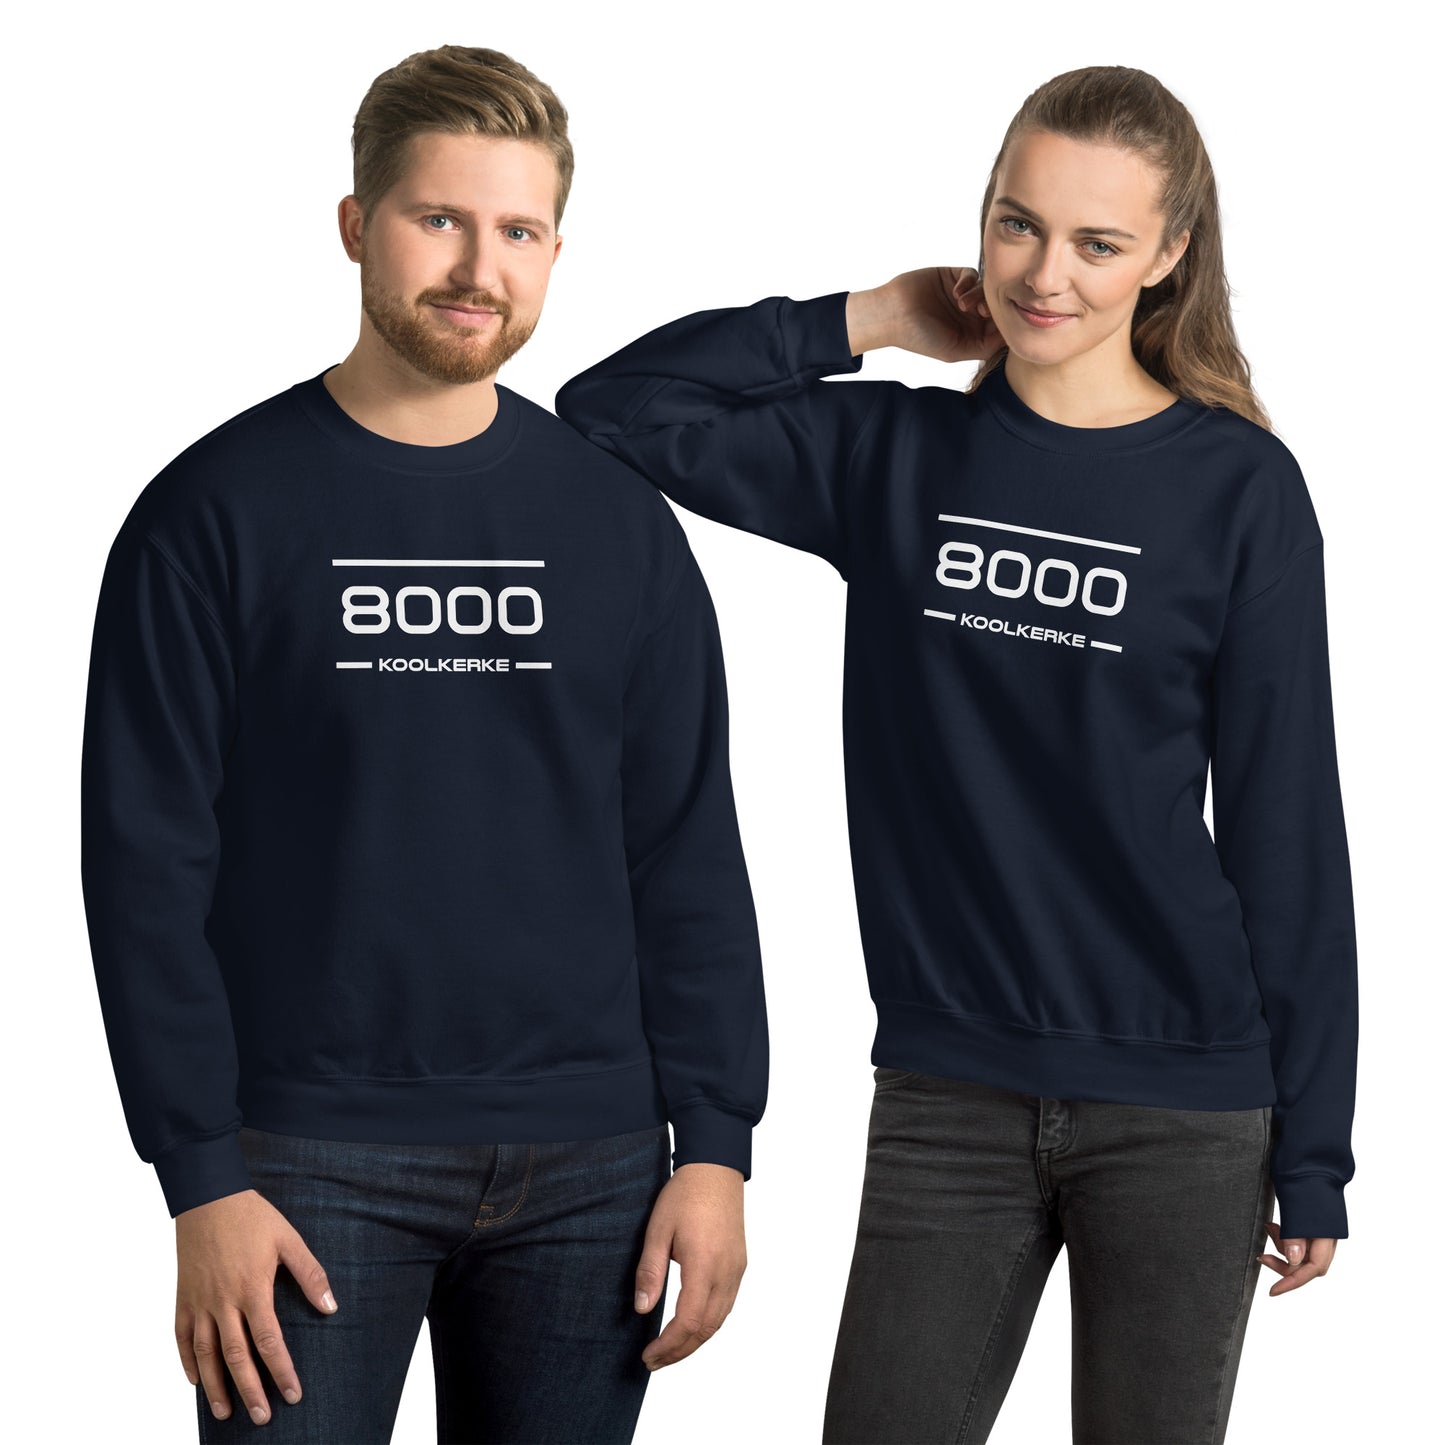 Sweater - 8000 - Koolkerke (M/V)